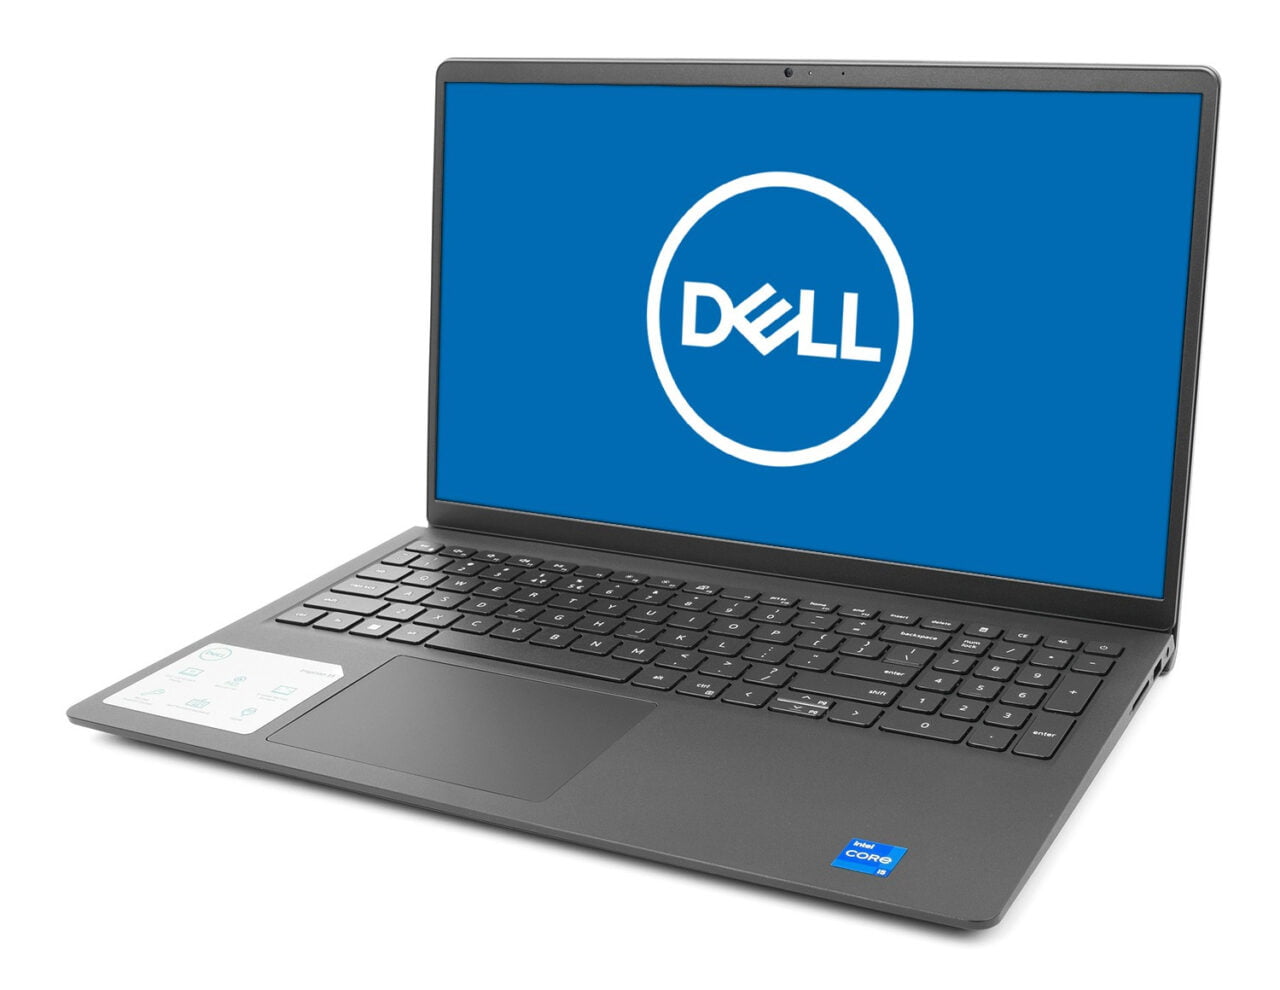 Laptop marki Dell z otwartym ekranem wyświetlającym logo firmy.